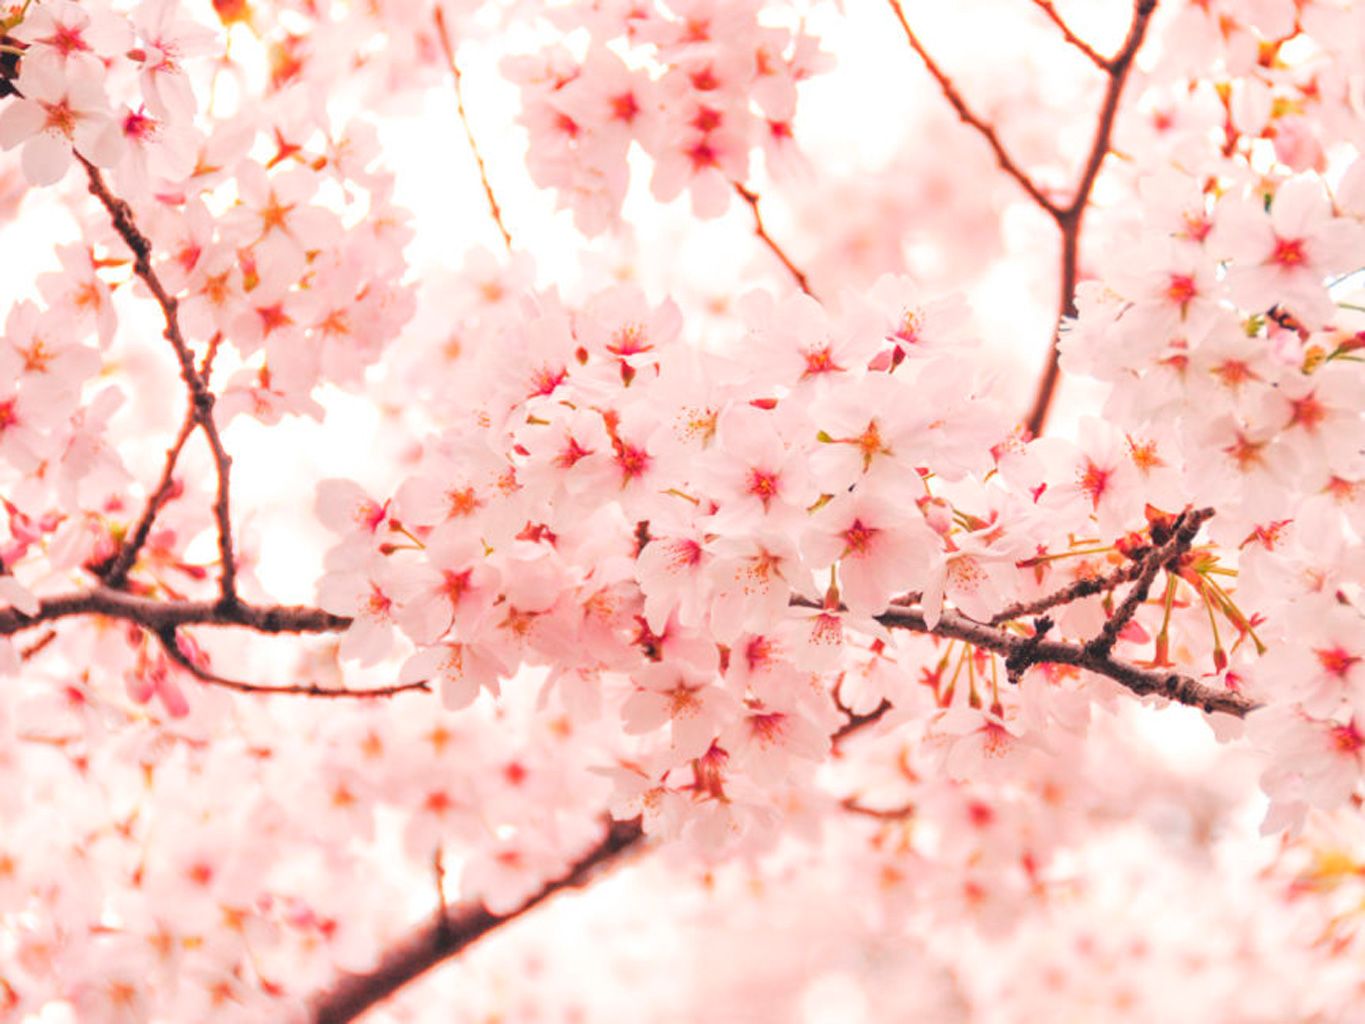 Flor de cerezo: las variedades de cerezos en flor más bonitas